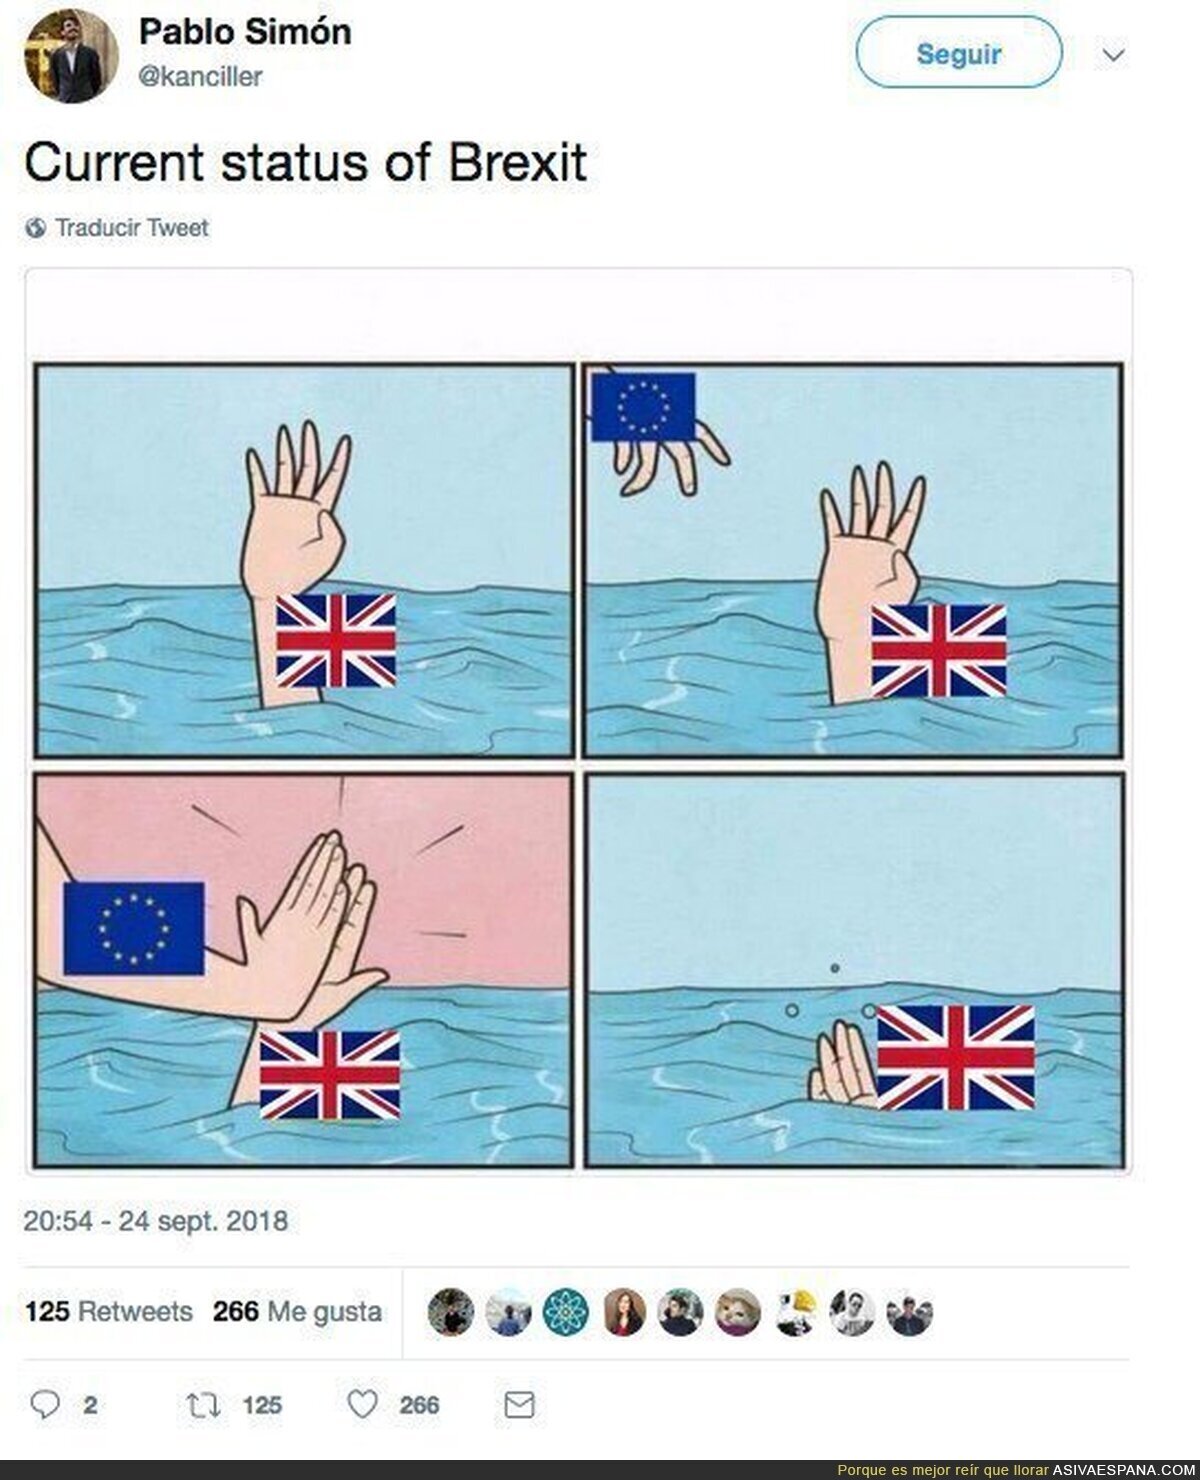 ¿Cómo está yendo el Brexit?